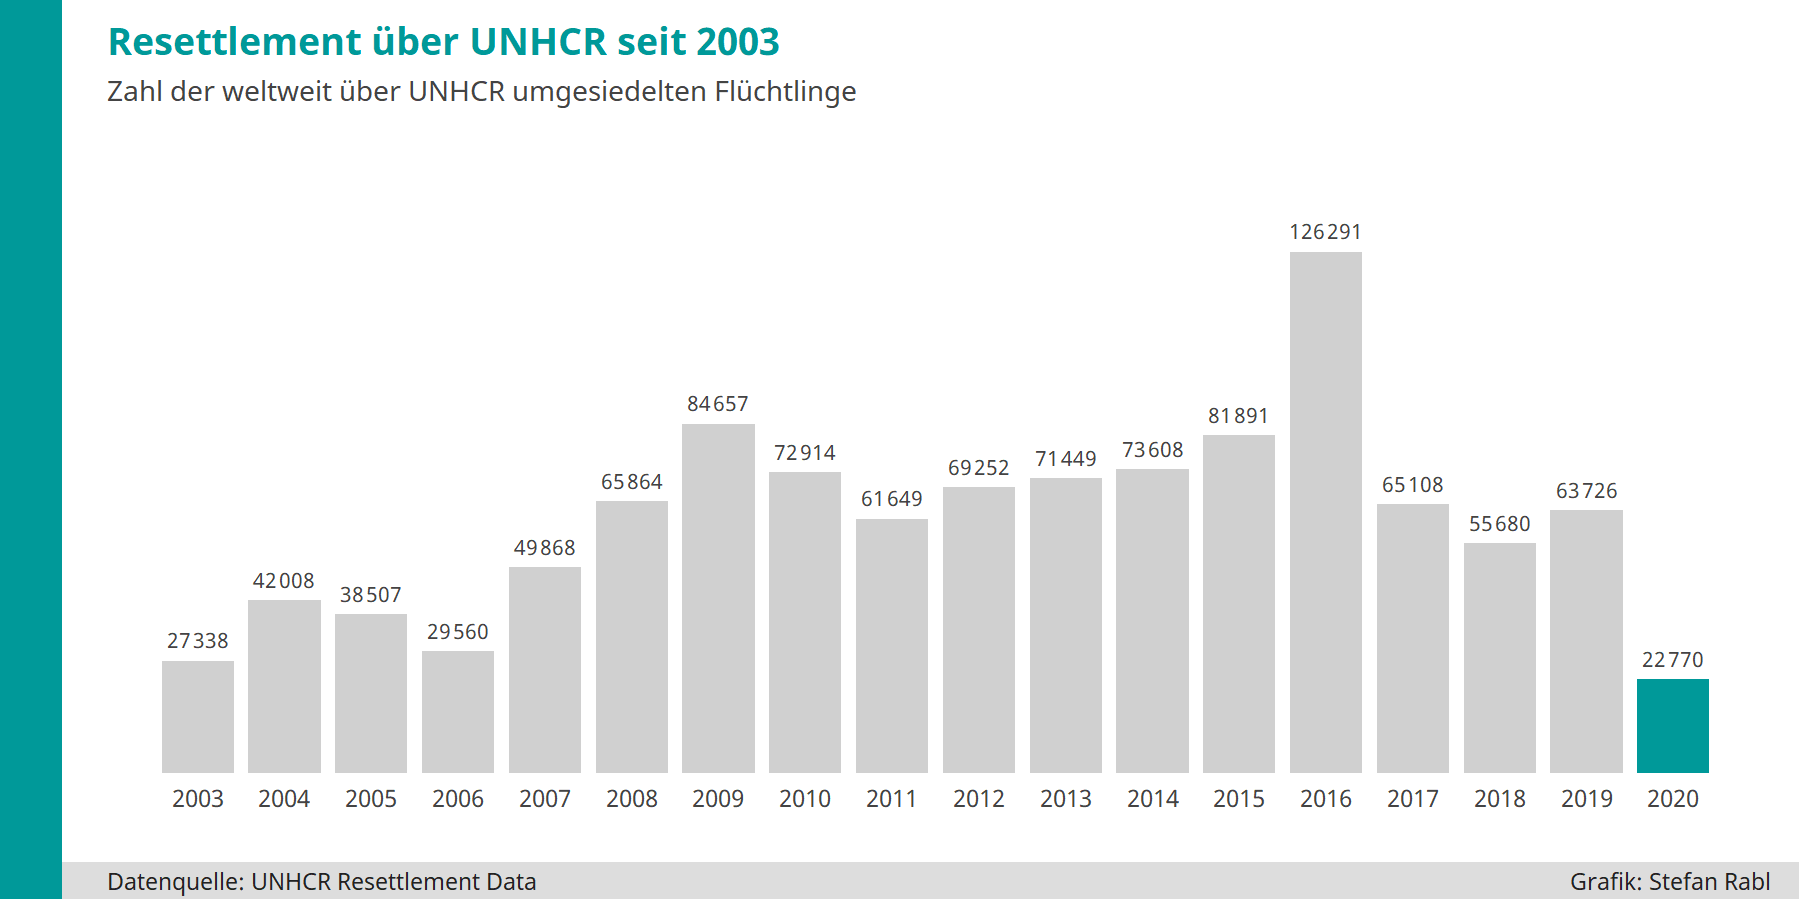 Grafik: Über Resettlement pro Jahr umgesiedelte Personen seit 2003